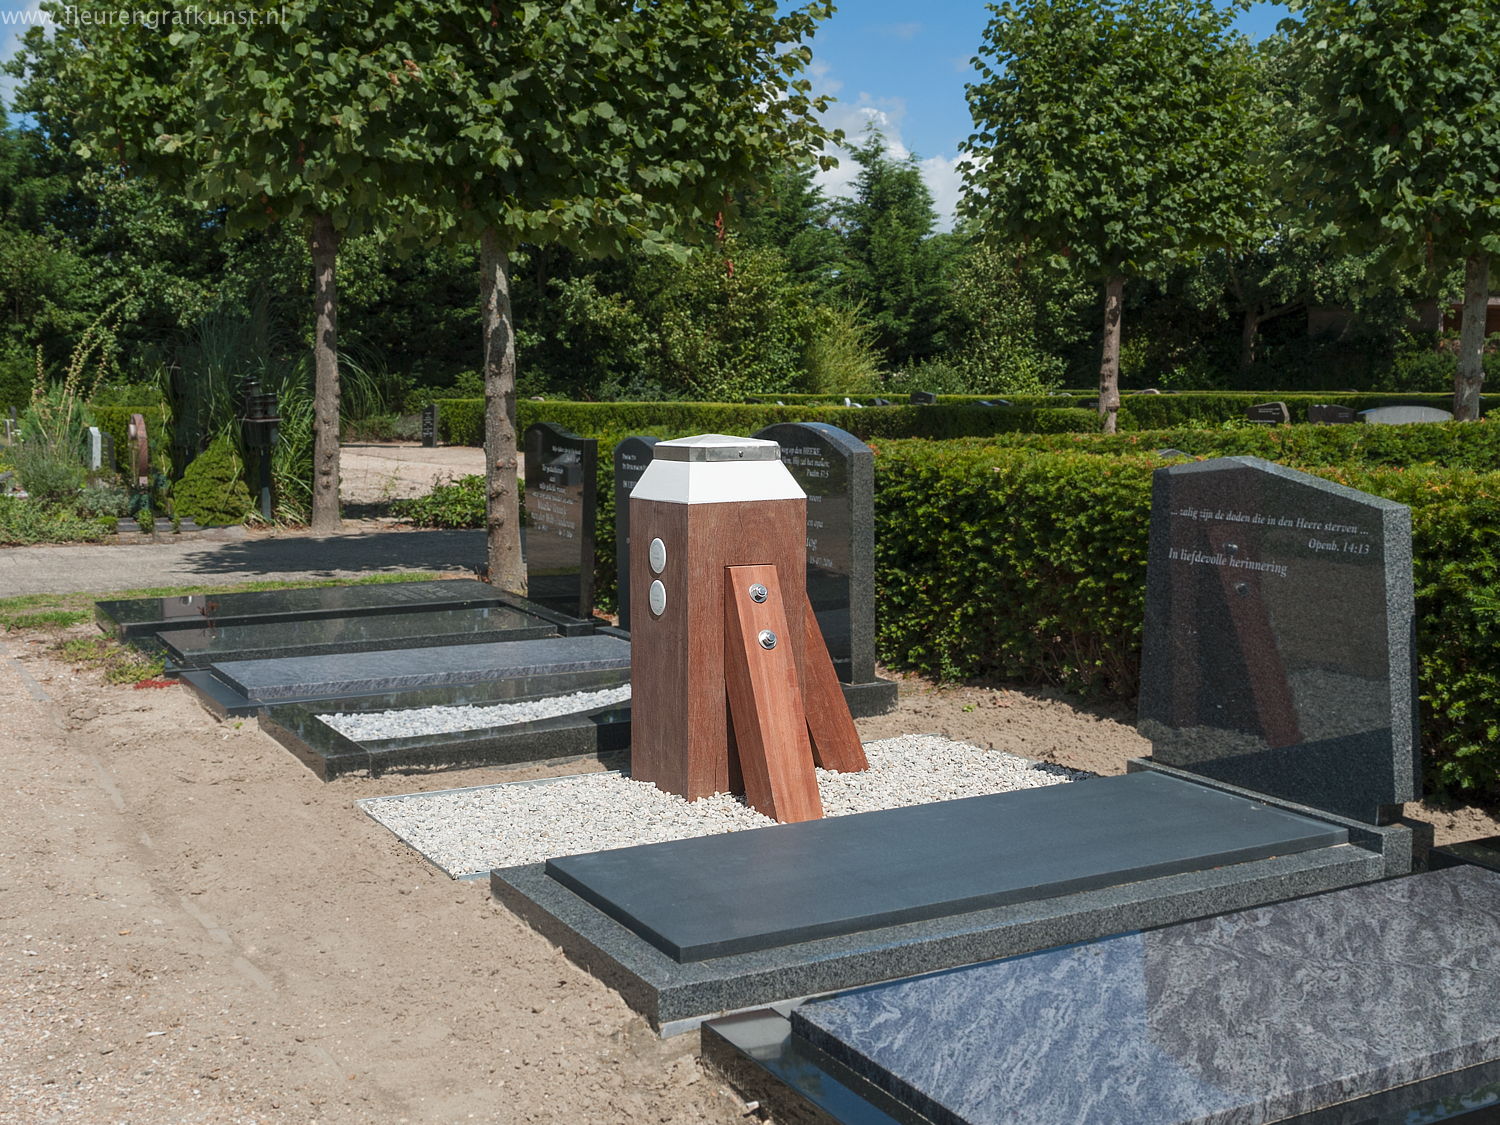 Wooden headstone in Holland - Grabmal aus Holz - dukdalf op begraafplaats - geen meerpaal